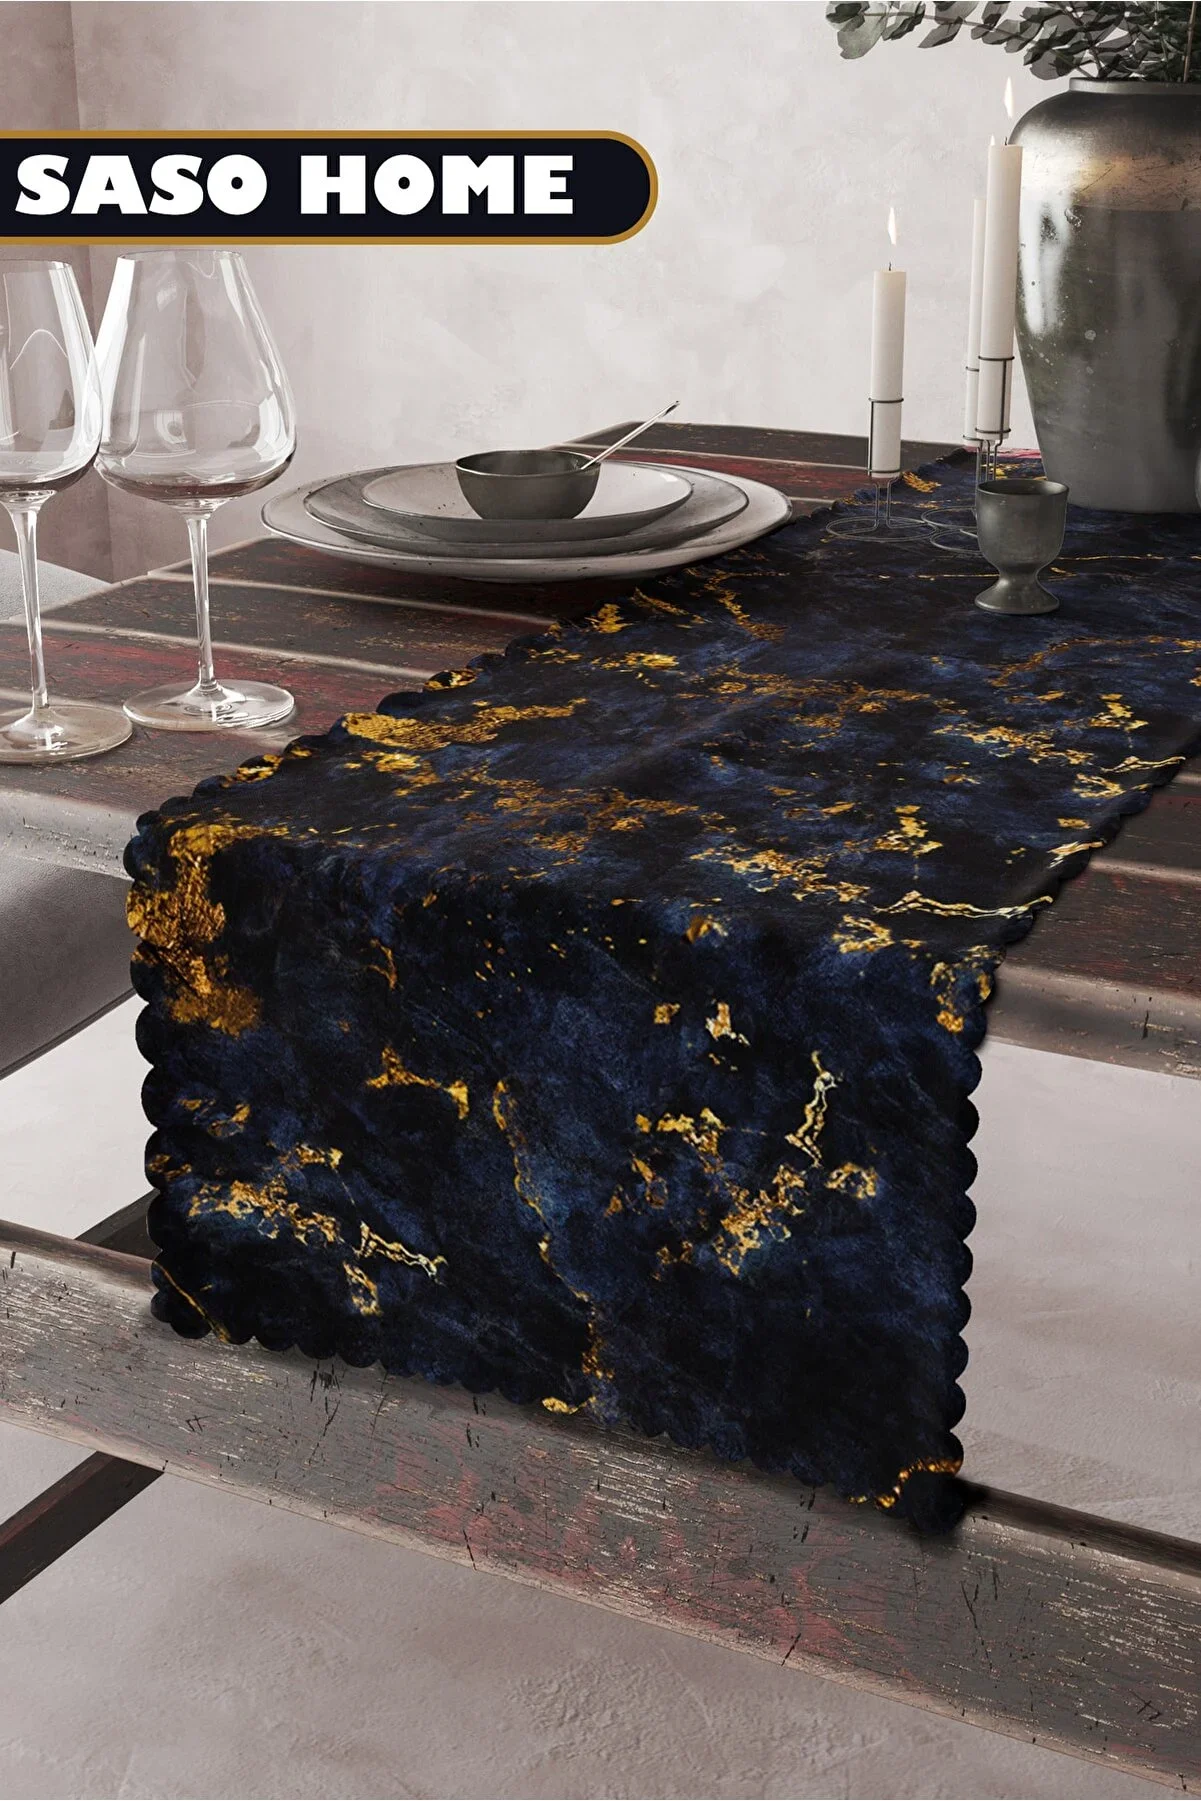 

Navy Blue Gray Sodalite Marble Patterned Quality Runner Table Cloth Italian Velvet Fabric 45x140 Cm Decorative Gift Home Runner